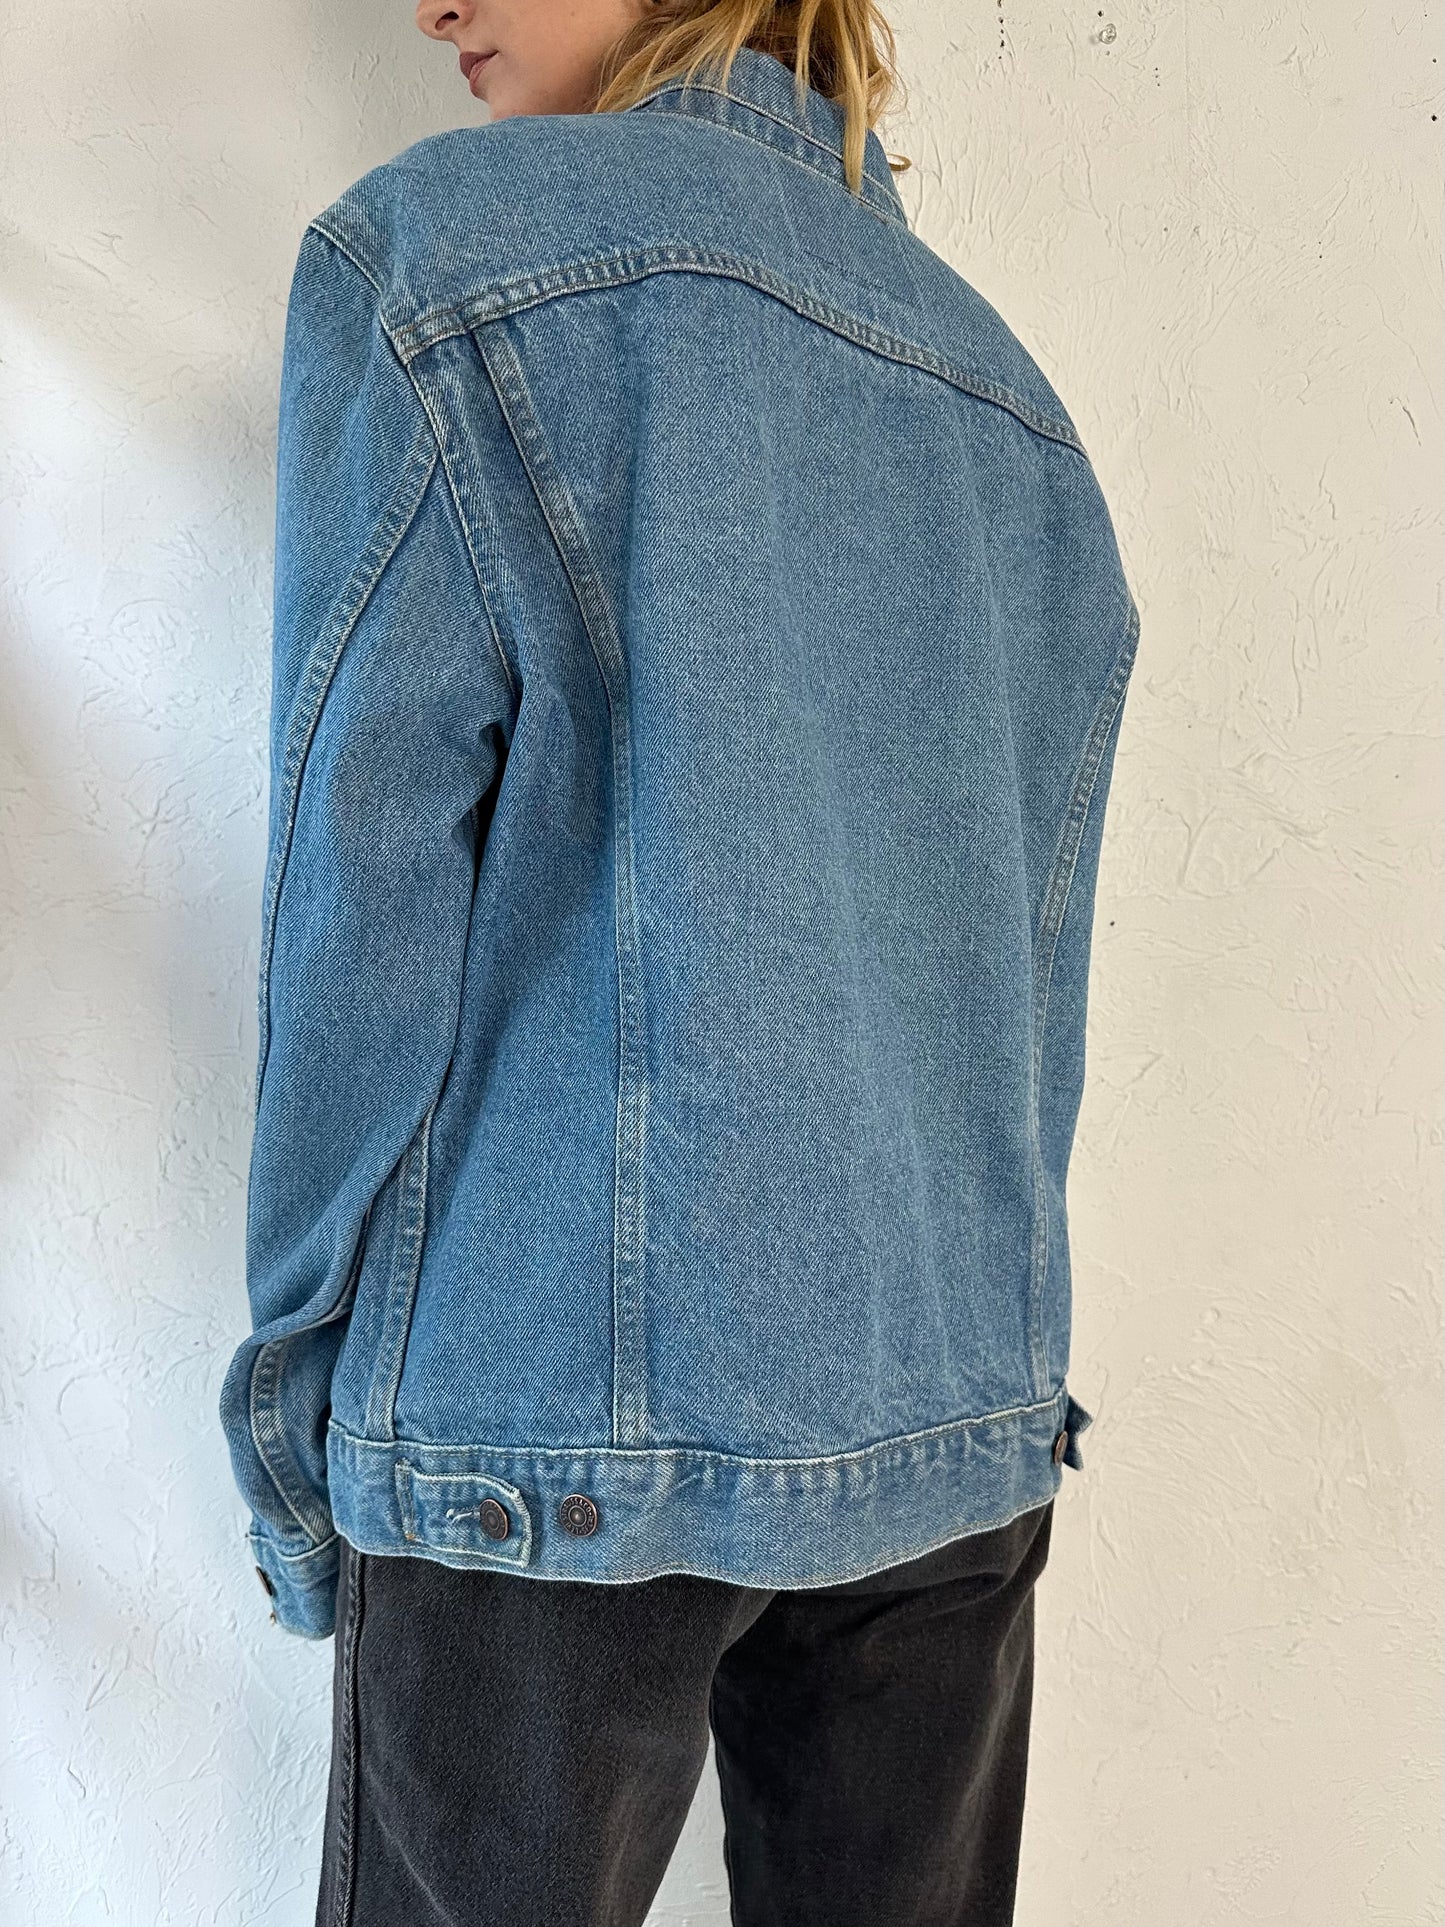 Vintage 'Levis' Denim Jacket / Large